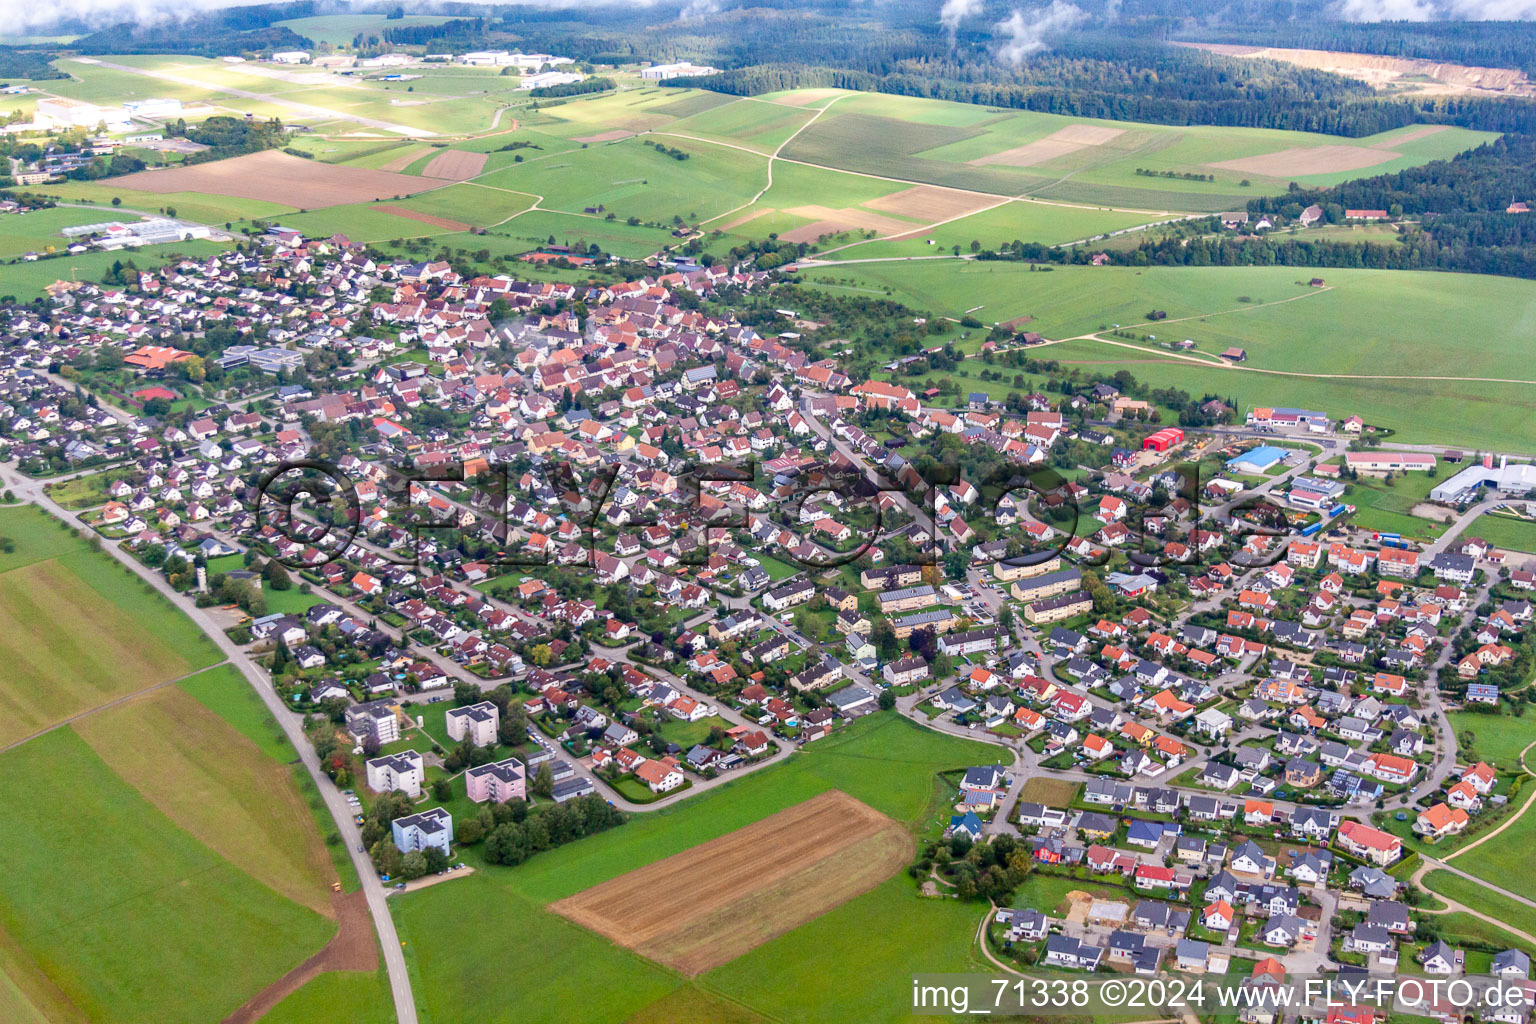 Neuhausen ob Eck dans le département Bade-Wurtemberg, Allemagne vue d'en haut